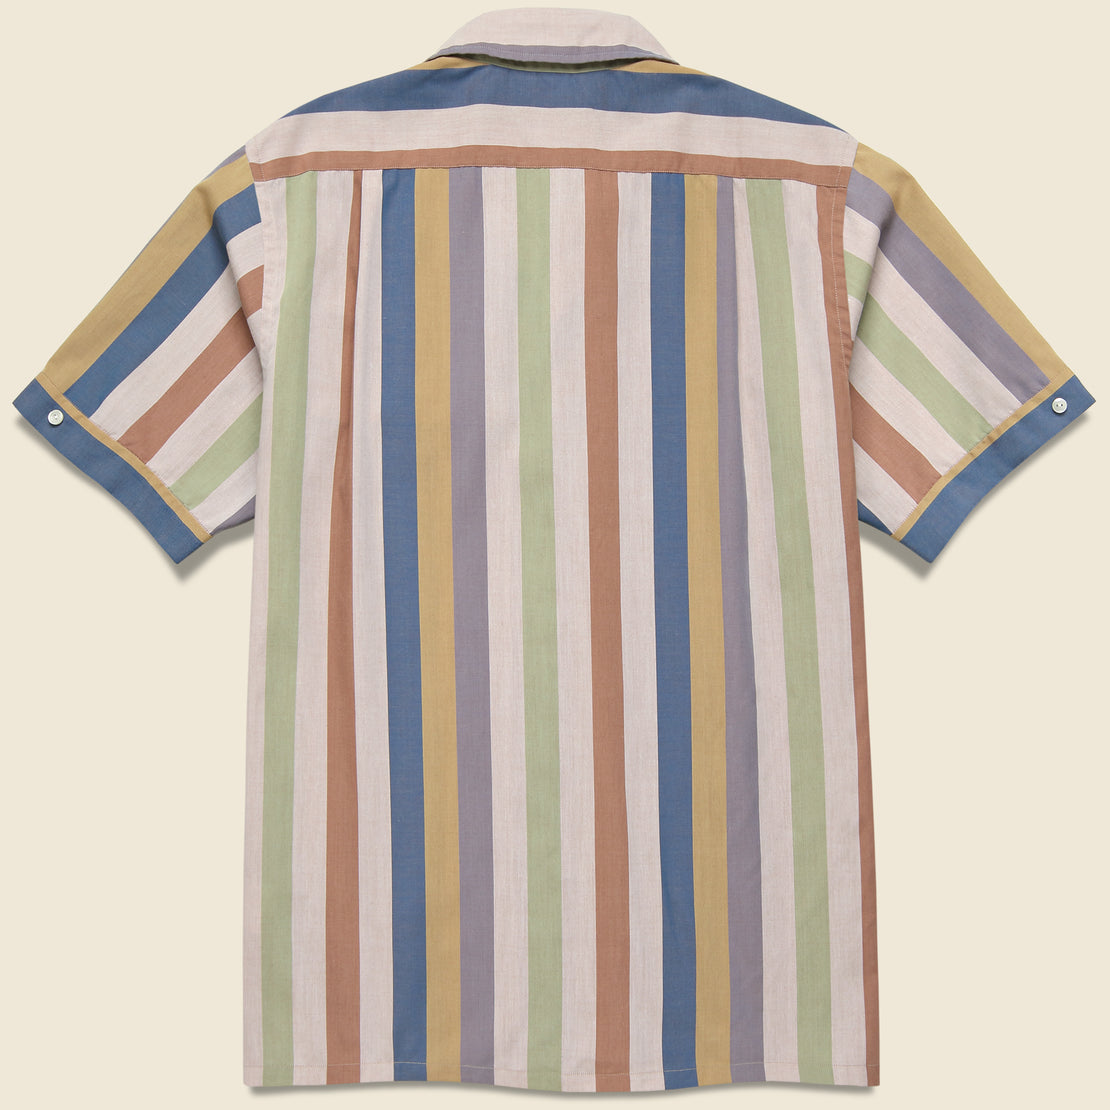 Italian Collar Multi Stripe Shirt - Beige Stripe/Multi - BEAMS+ - STAG Provisions - Tops - S/S Woven - Stripe